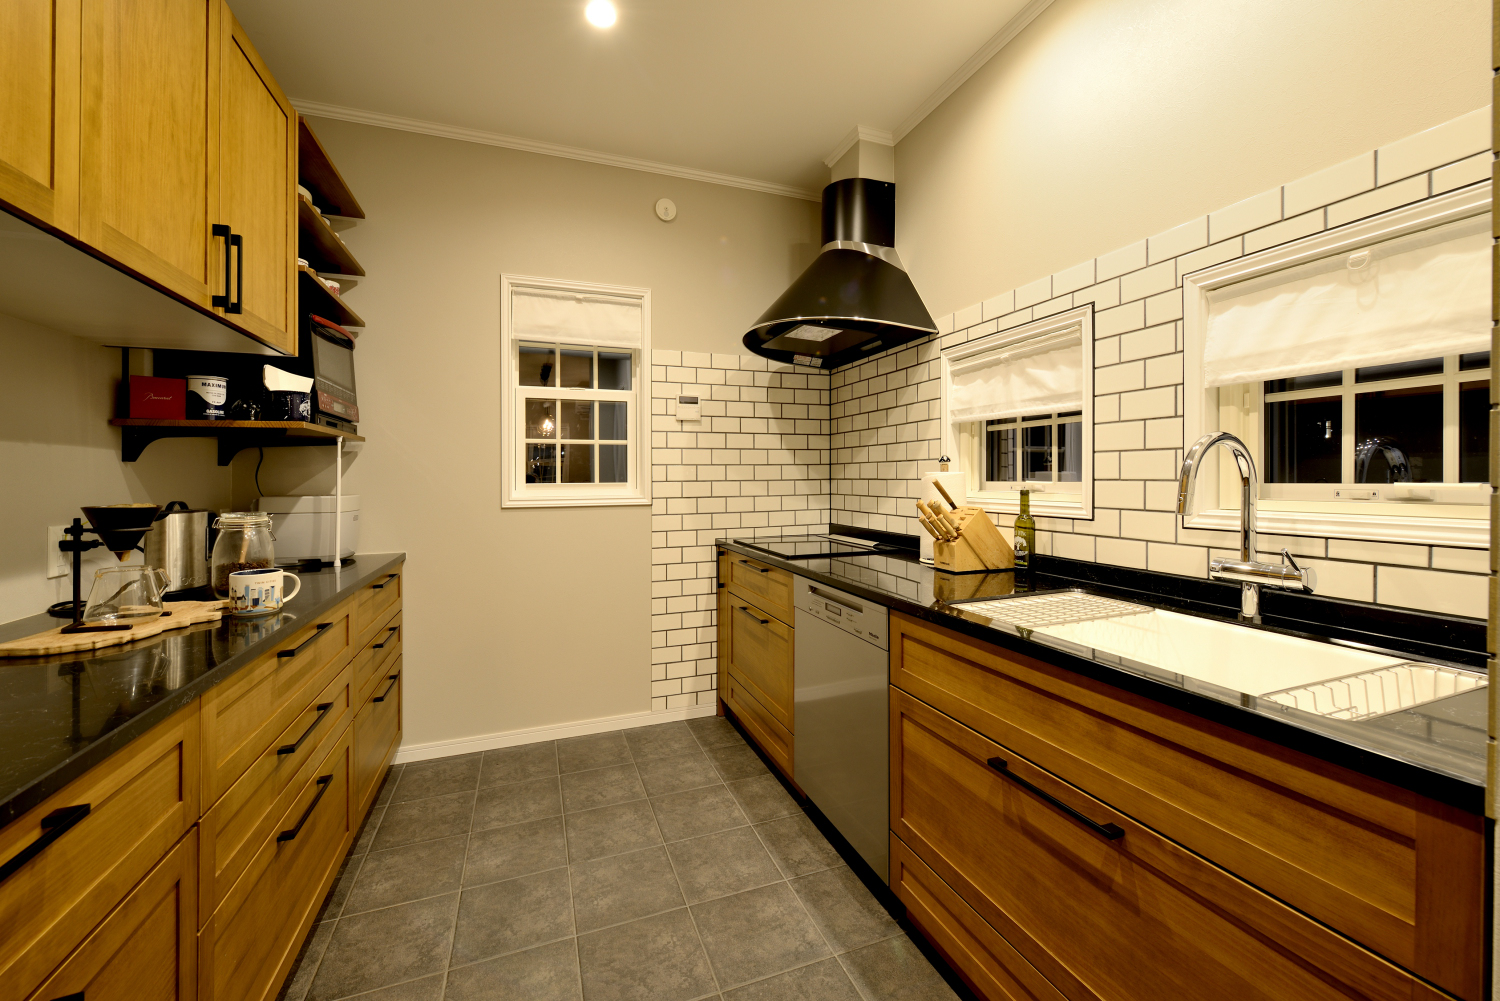 壁面や床のタイル張りが印象的なブルックリン風キッチン～小窓のデザインがおしゃれ